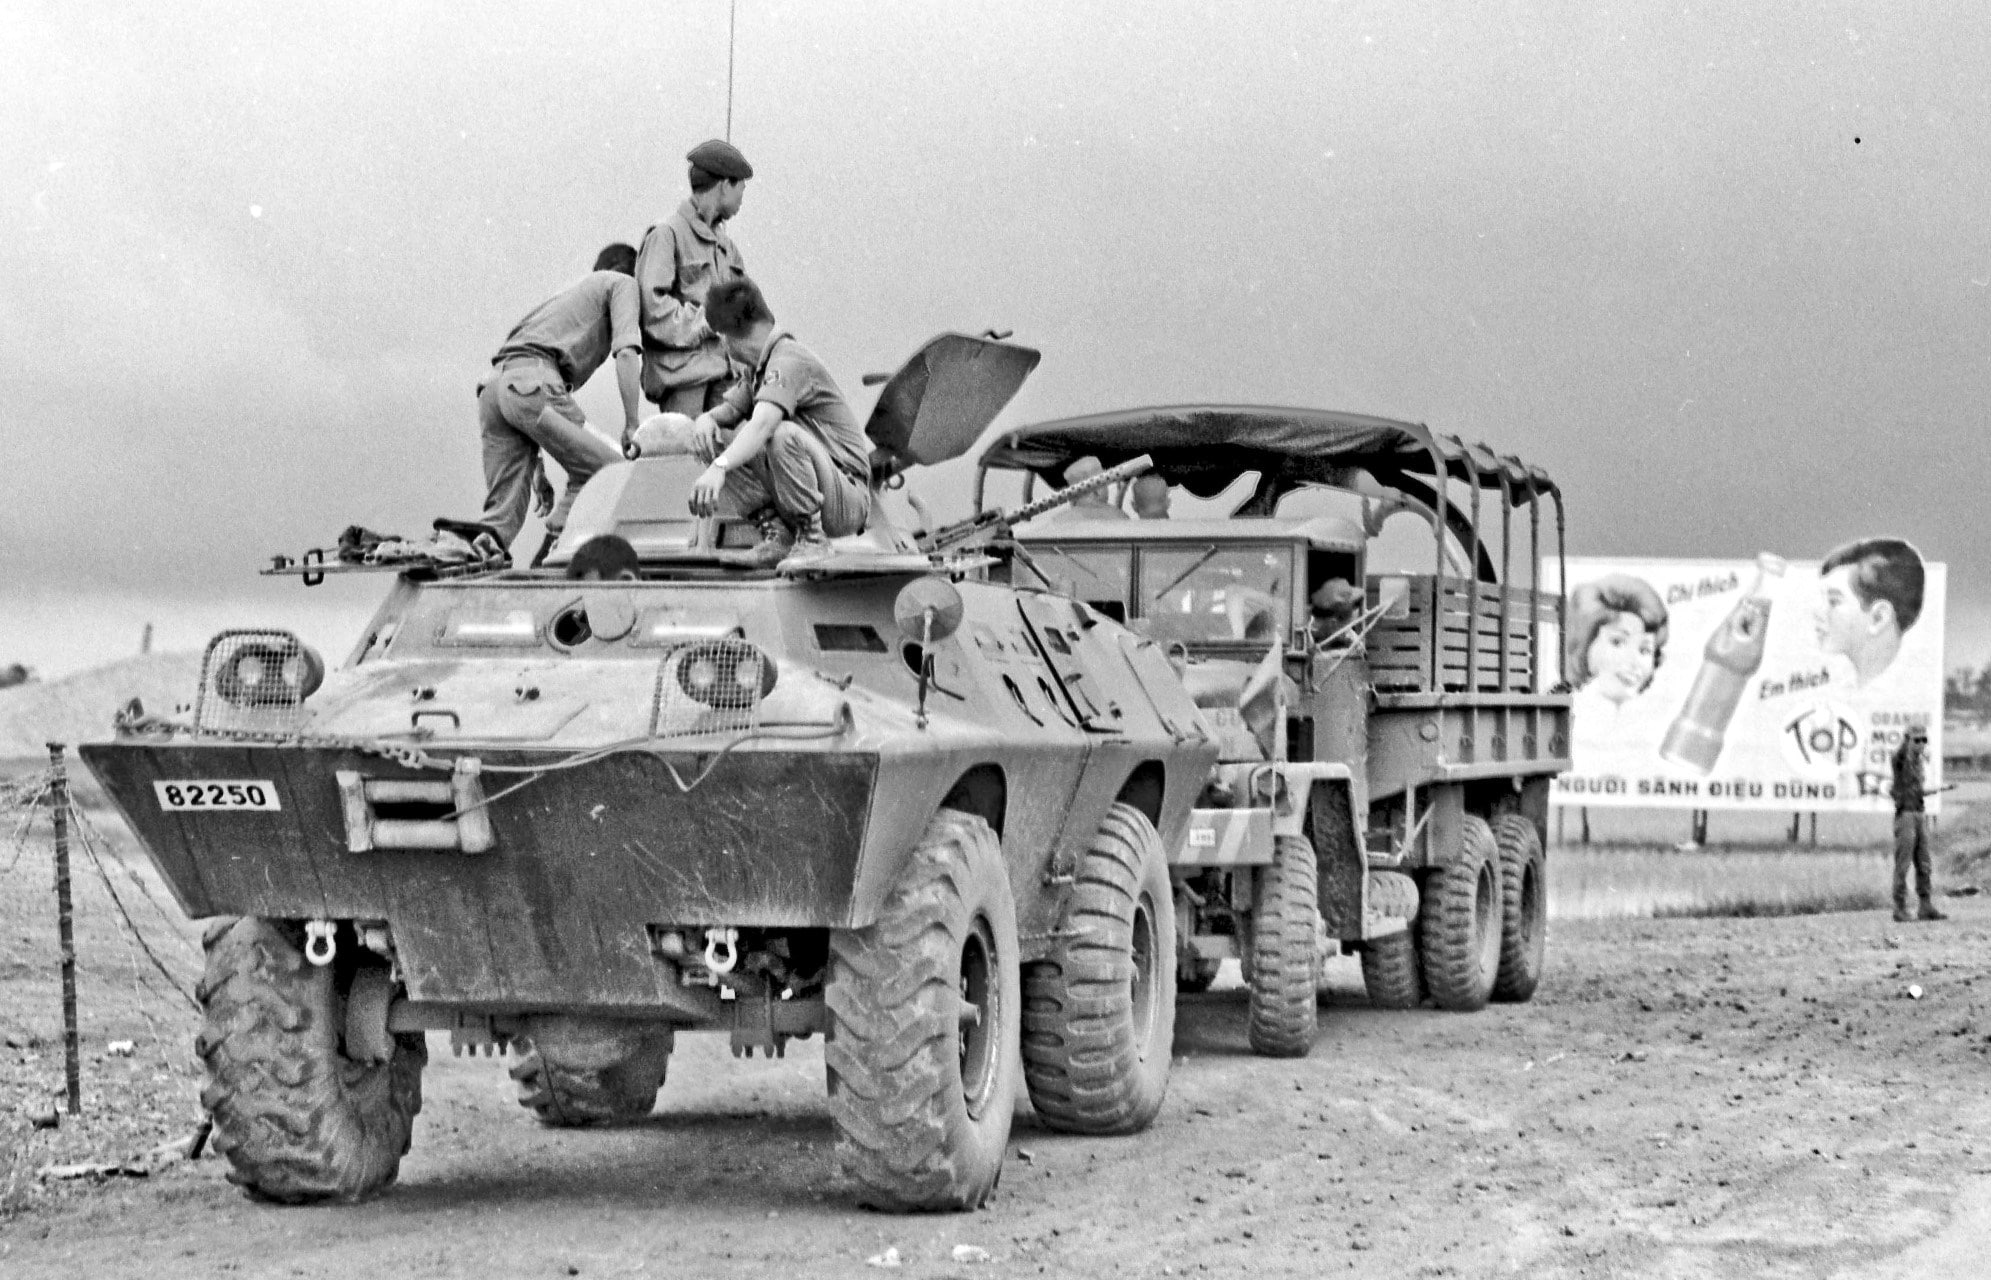 vietnam war, transportation, mode of transportation, military